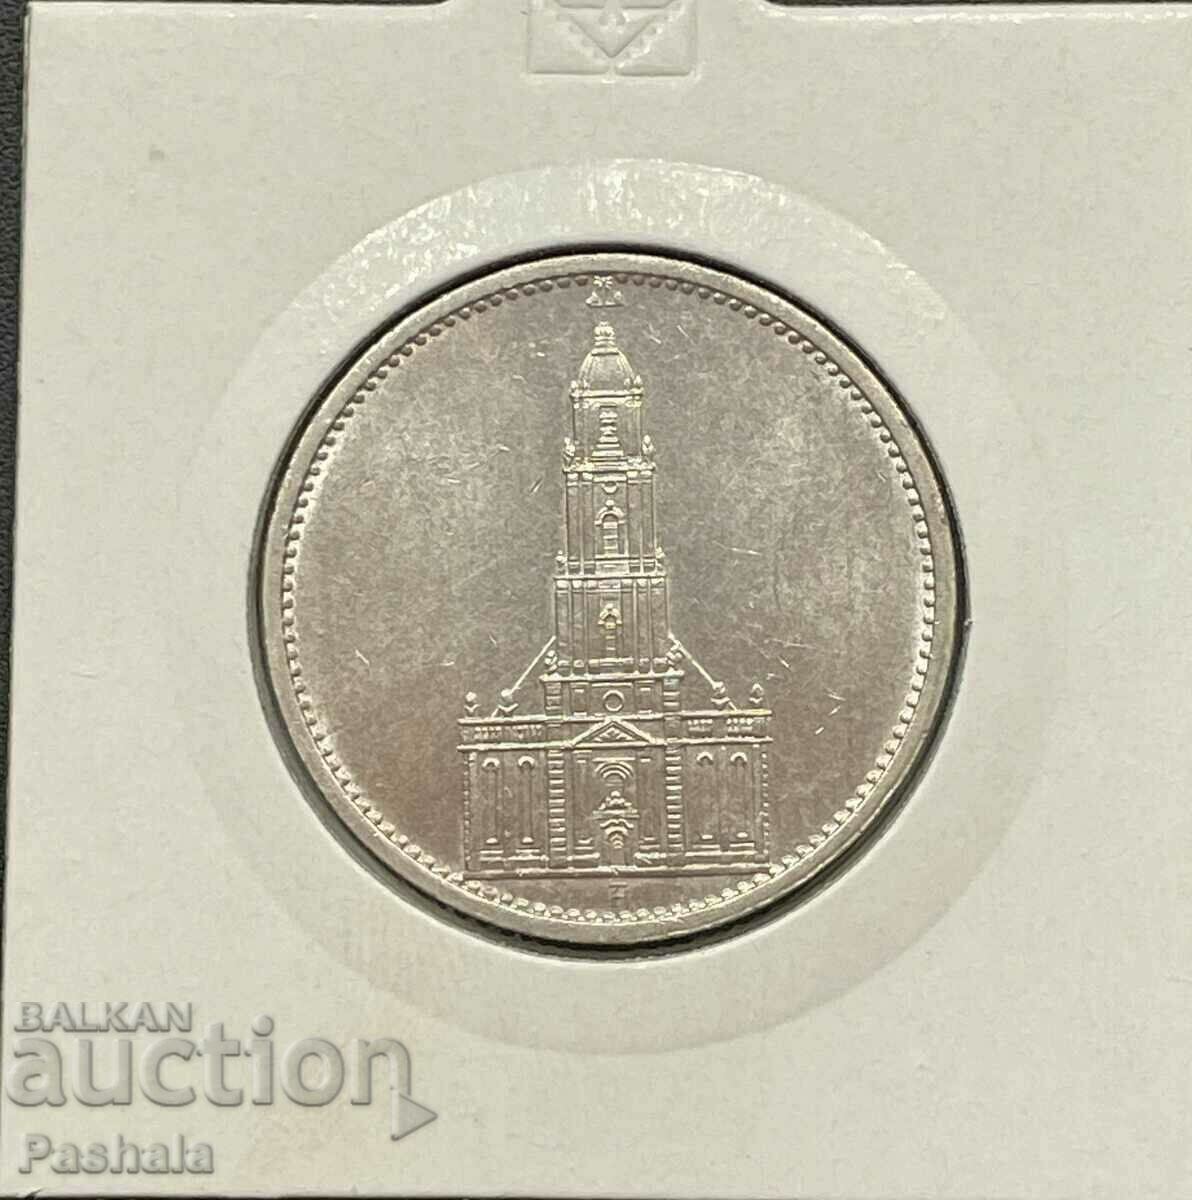 Германия 5 марки 1934 г.